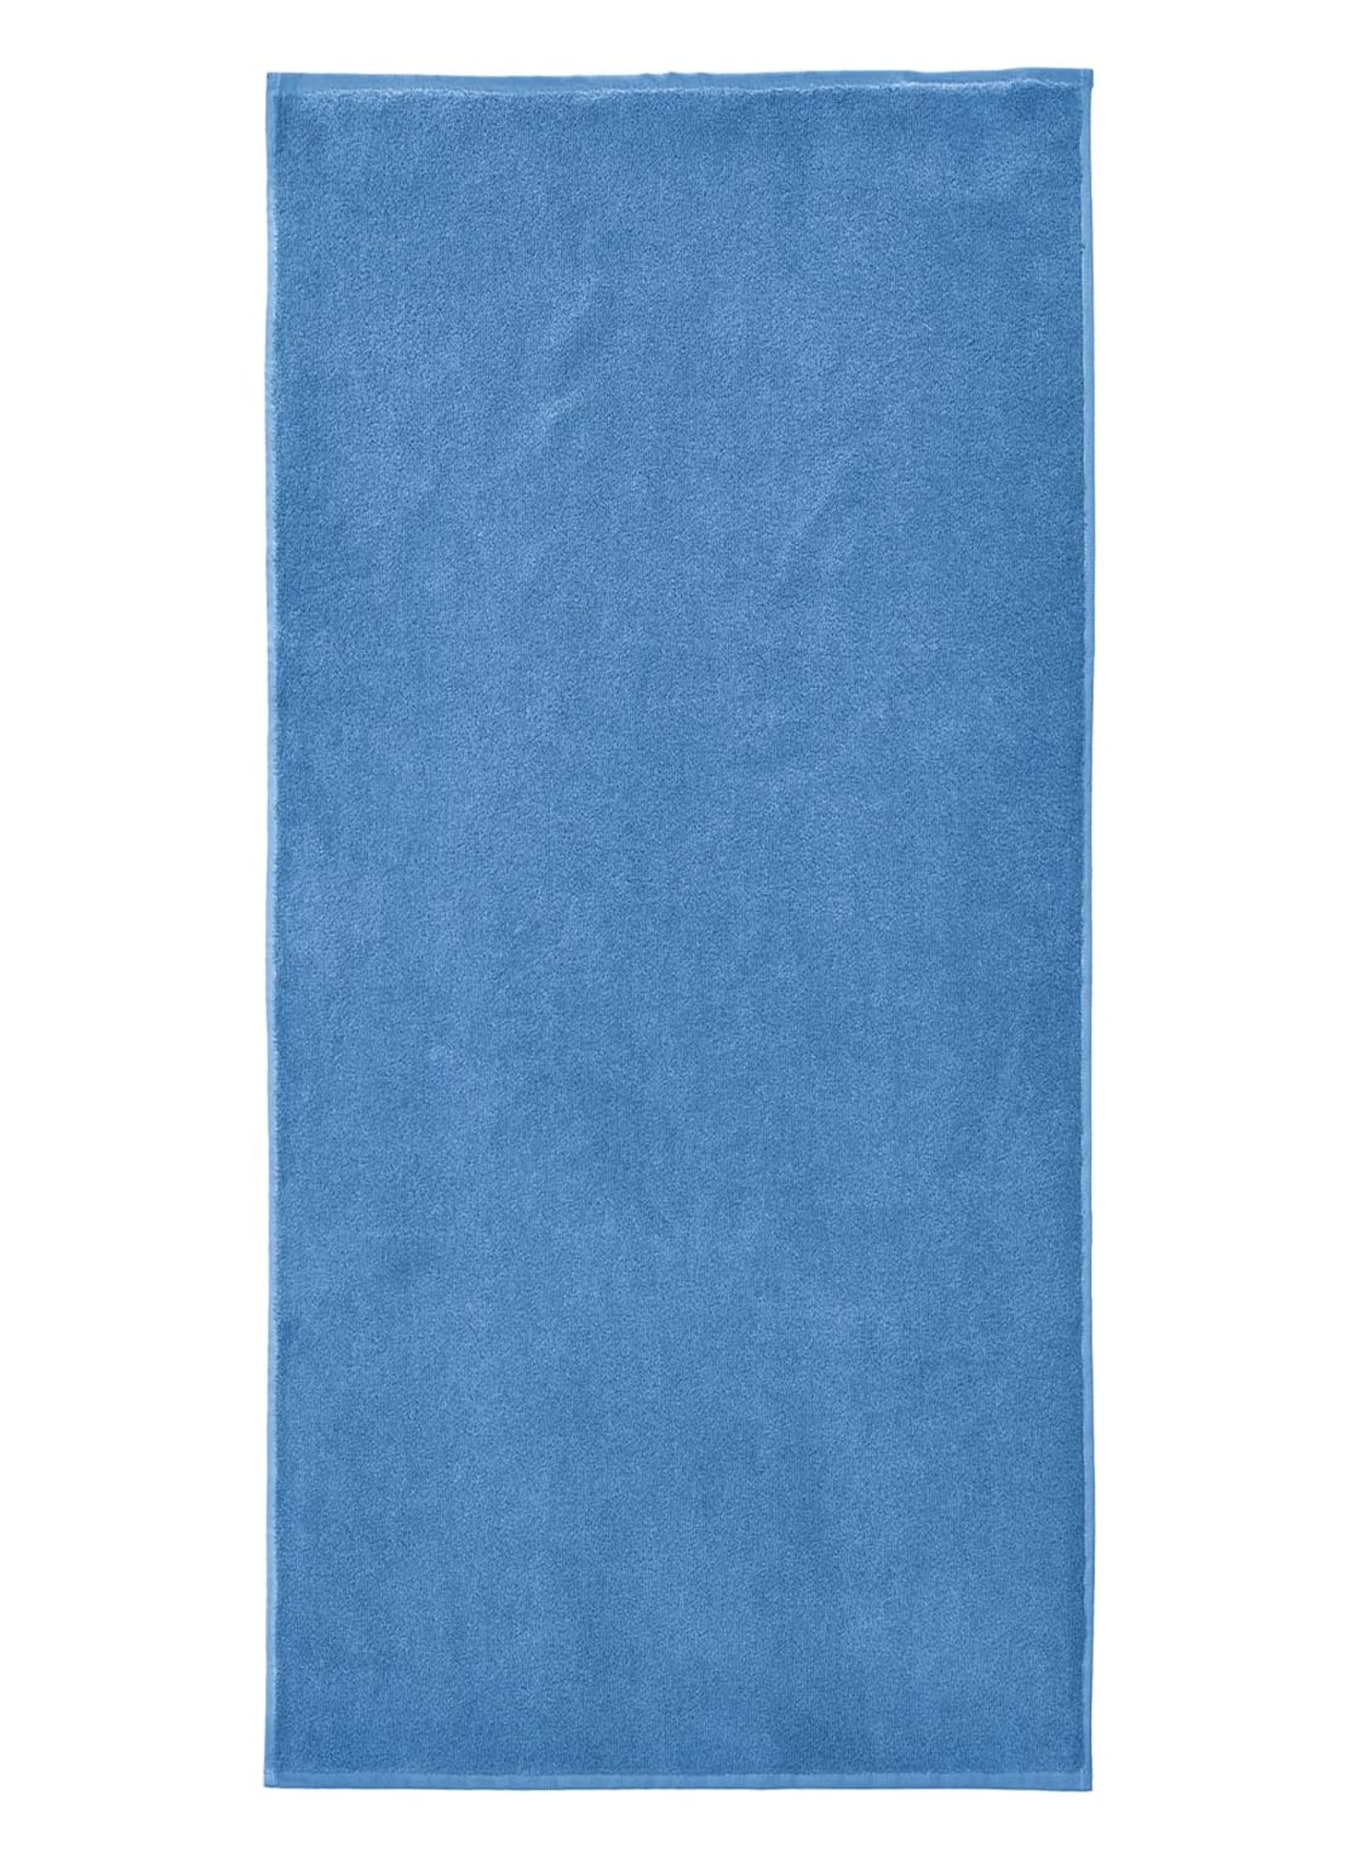 Christian Fischbacher Handtuch PRESTIGE, Farbe: BLAU (Bild 1)